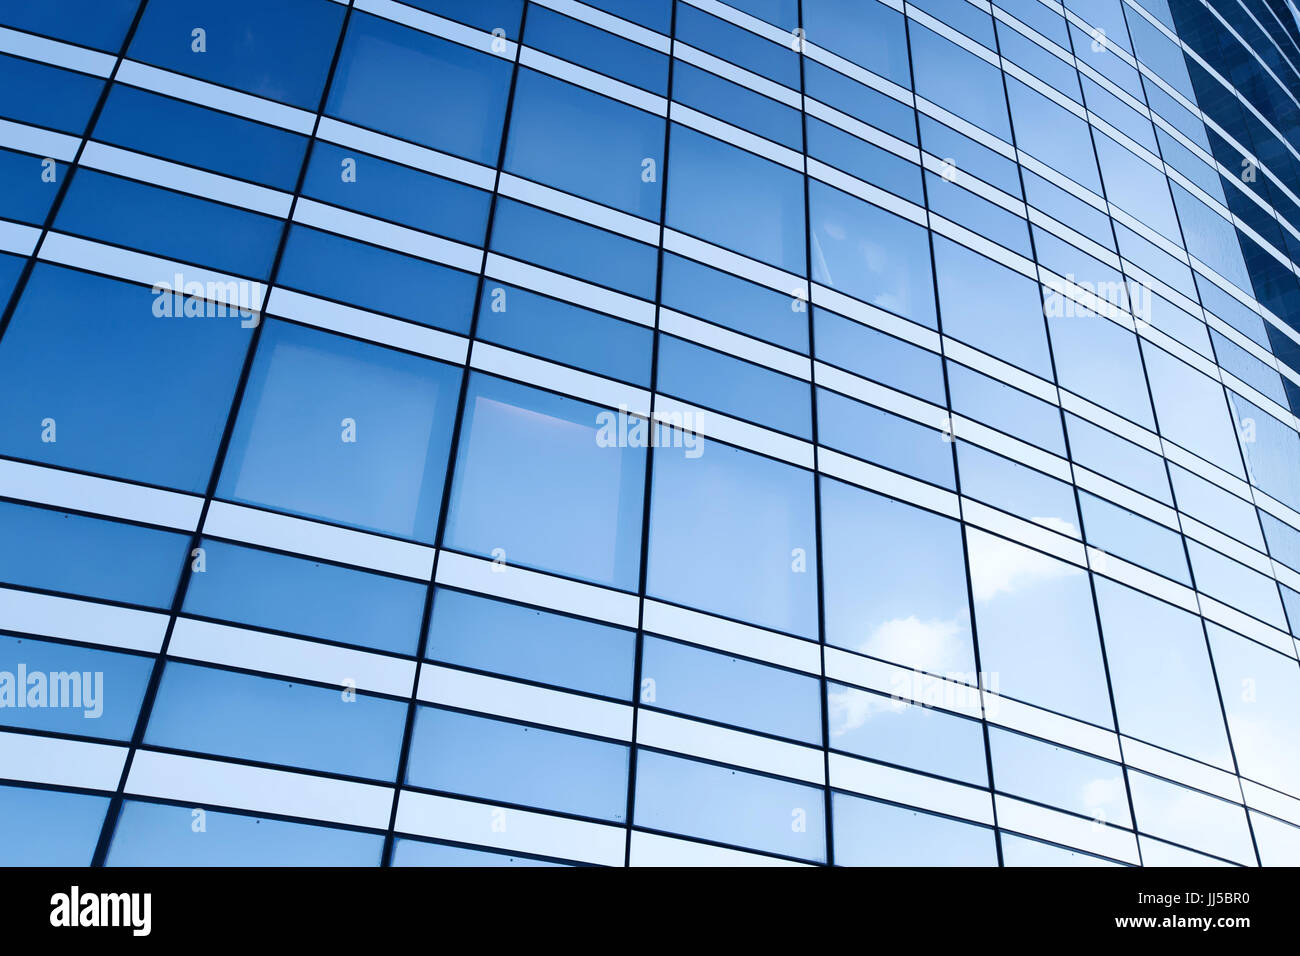 Abstract business background texture, mur de verre bleu de l'immeuble de bureaux modernes Banque D'Images